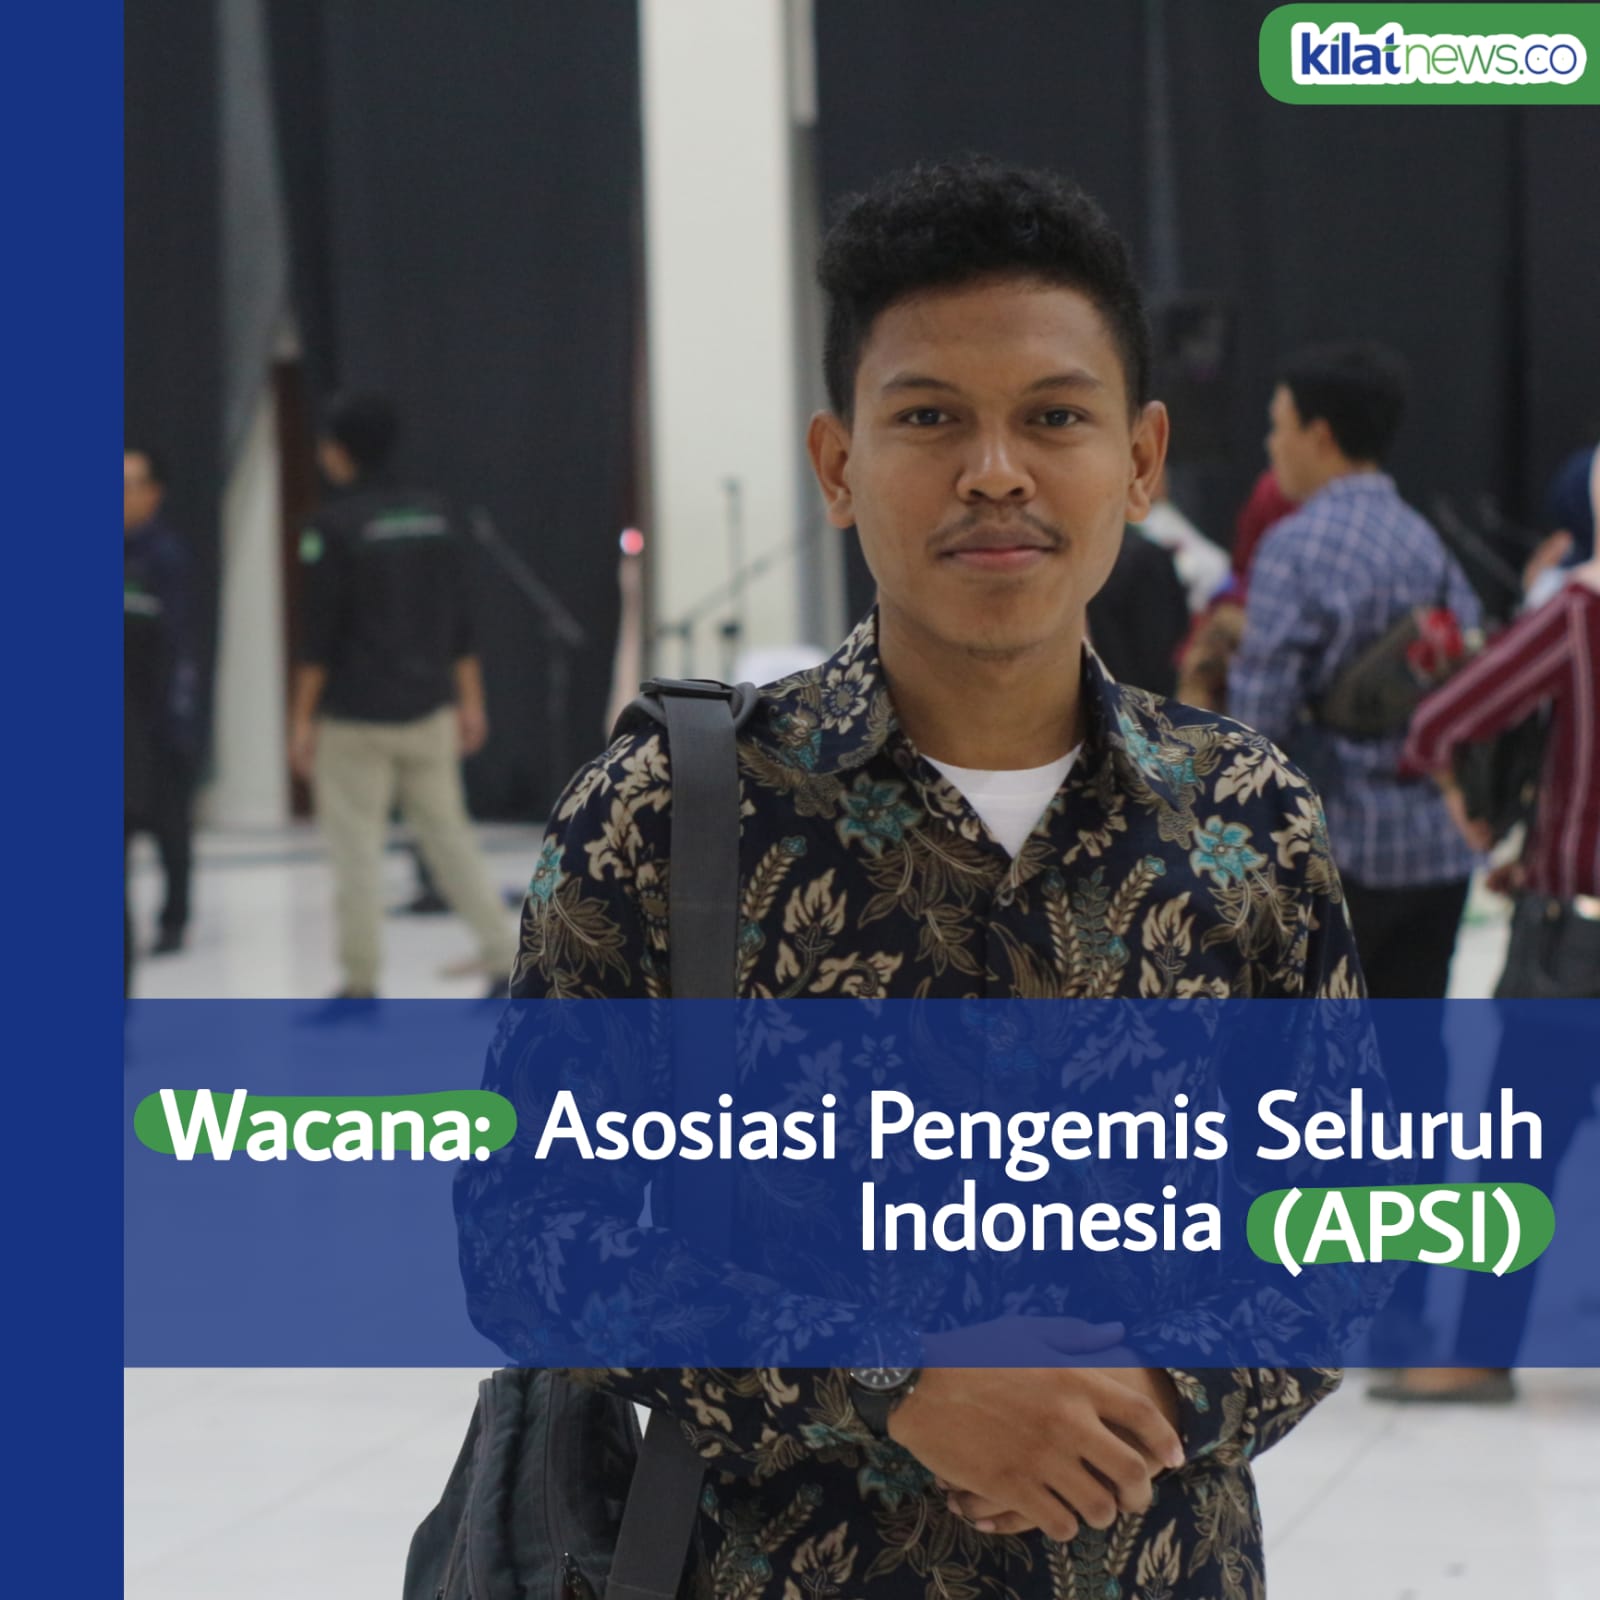 Wacana: Asosiasi Pengemis Seluruh Indonesia (APSI)